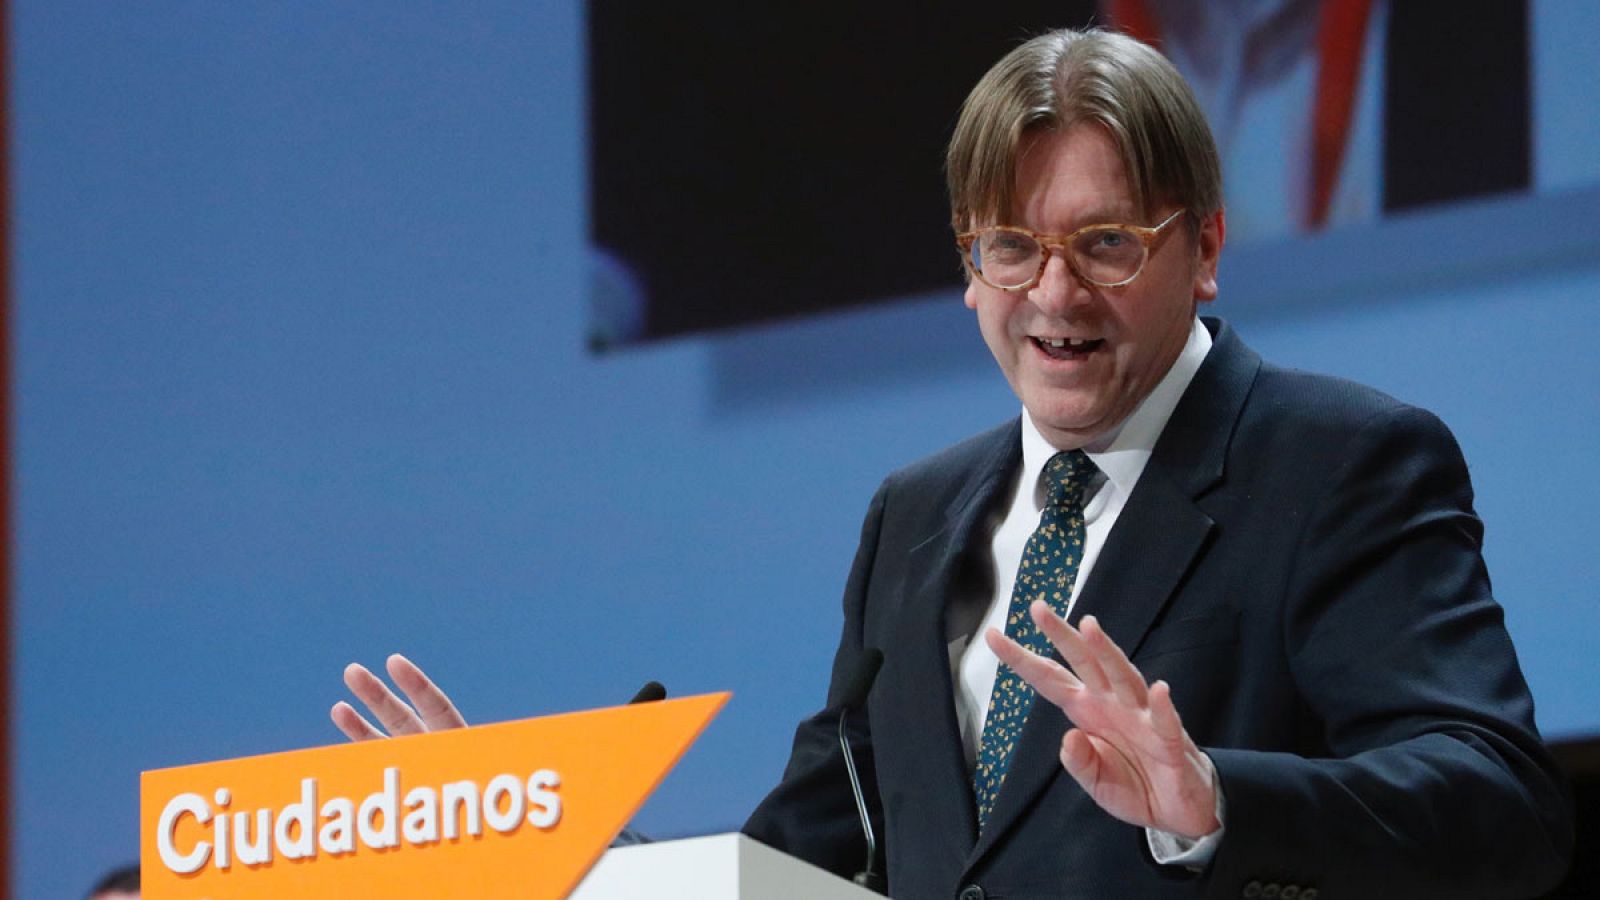 Guy Verhofstat, líder liberal europeo, advierte a Ciudadanos: "El éxito de la extrema derecha nos debe preocupar a todos"